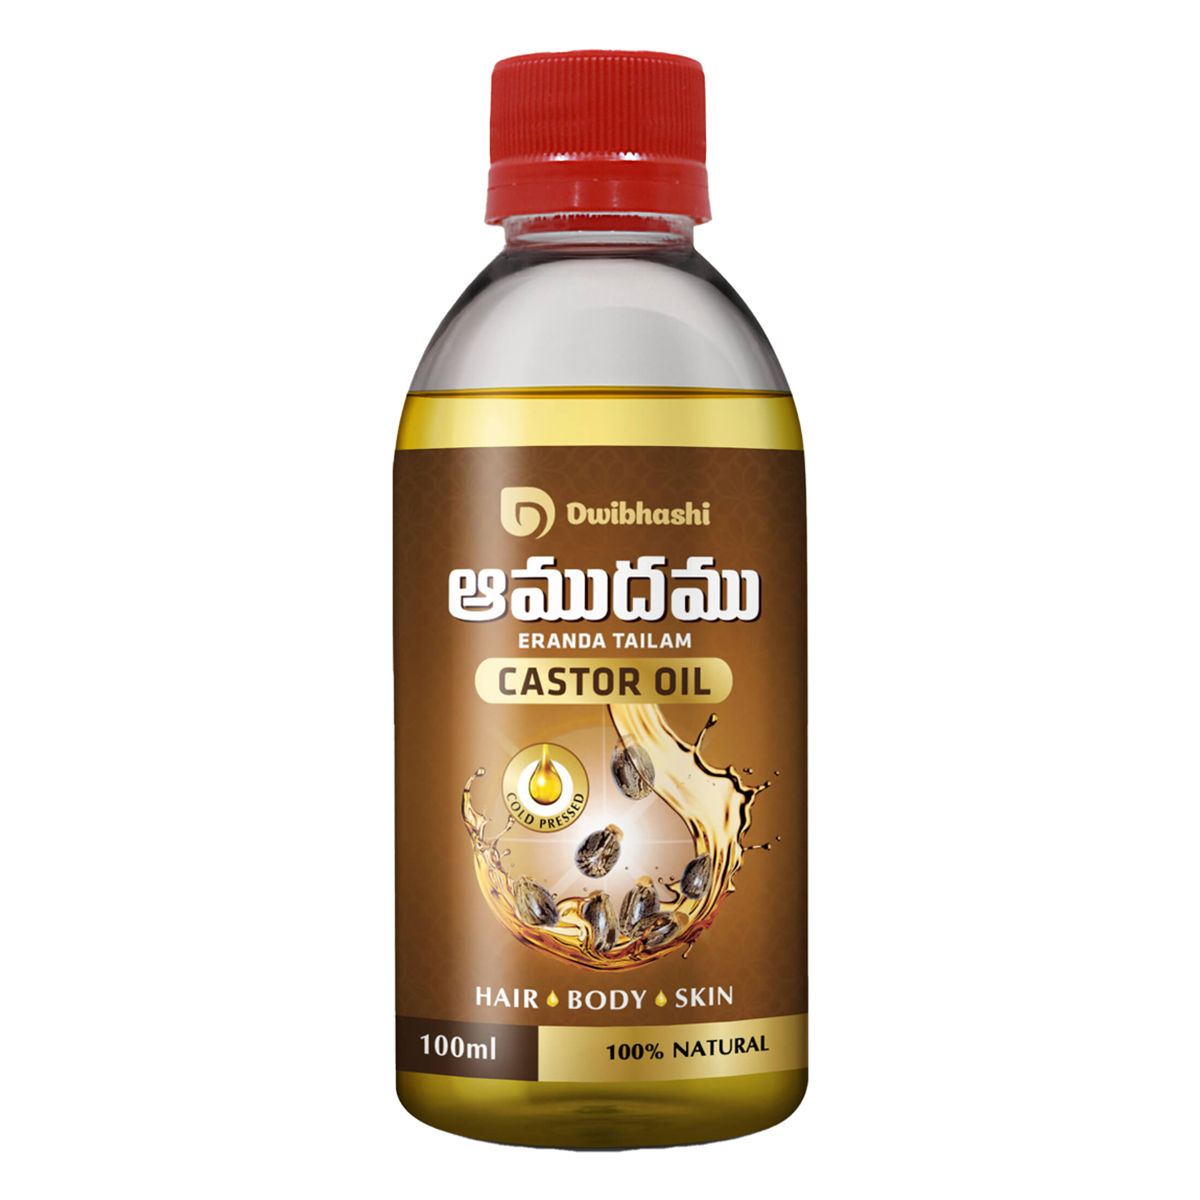 Buy Dwibhashi's Castor Oil, 100 ml Online